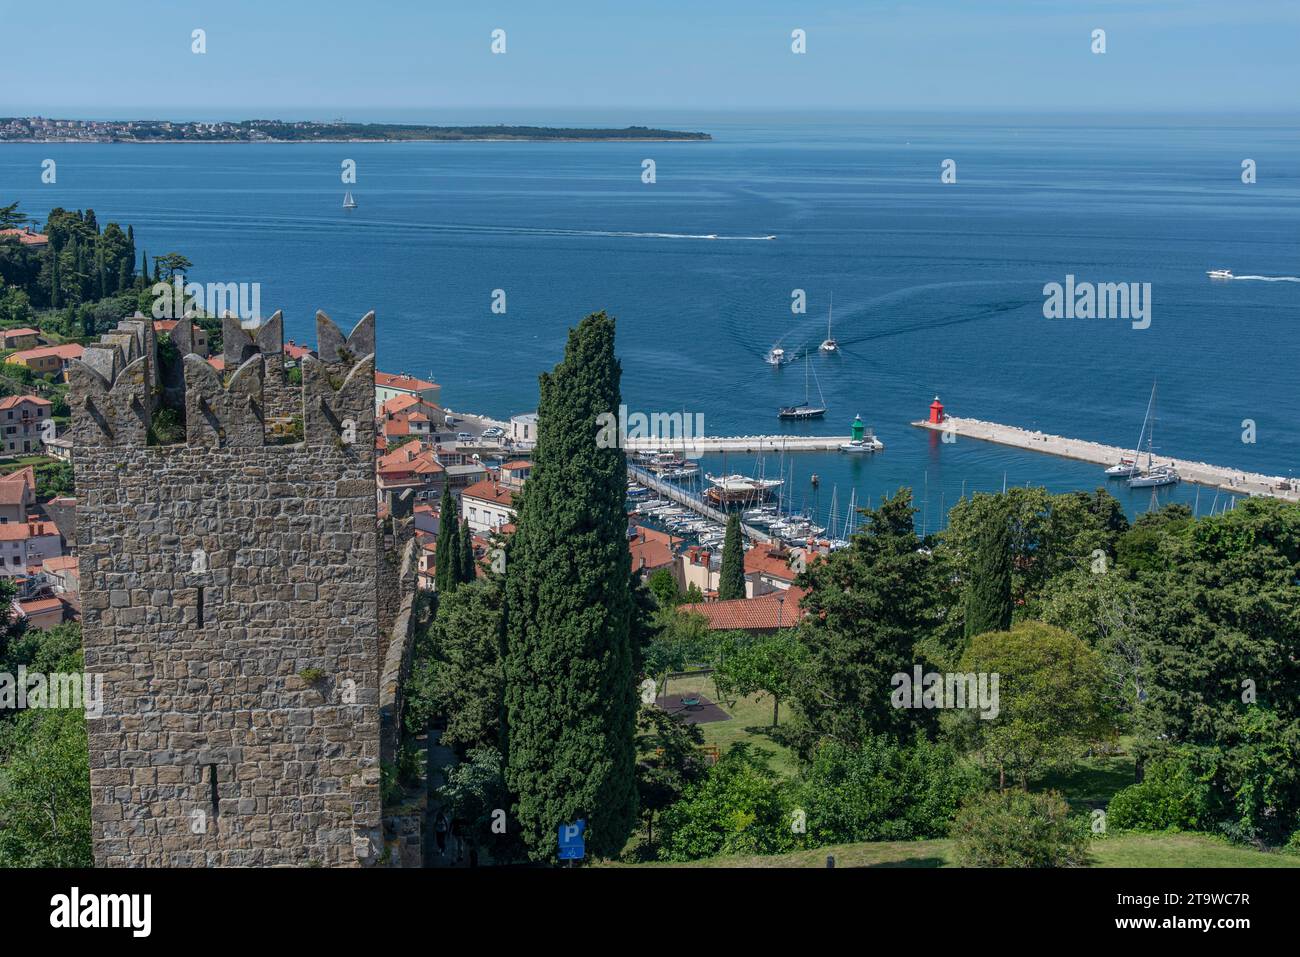 Vista aerea iconica della città portuale di pescatori di Pirano, Slovenia, sulla riviera del Mare Adriatico nel Mar Mediterraneo Foto Stock